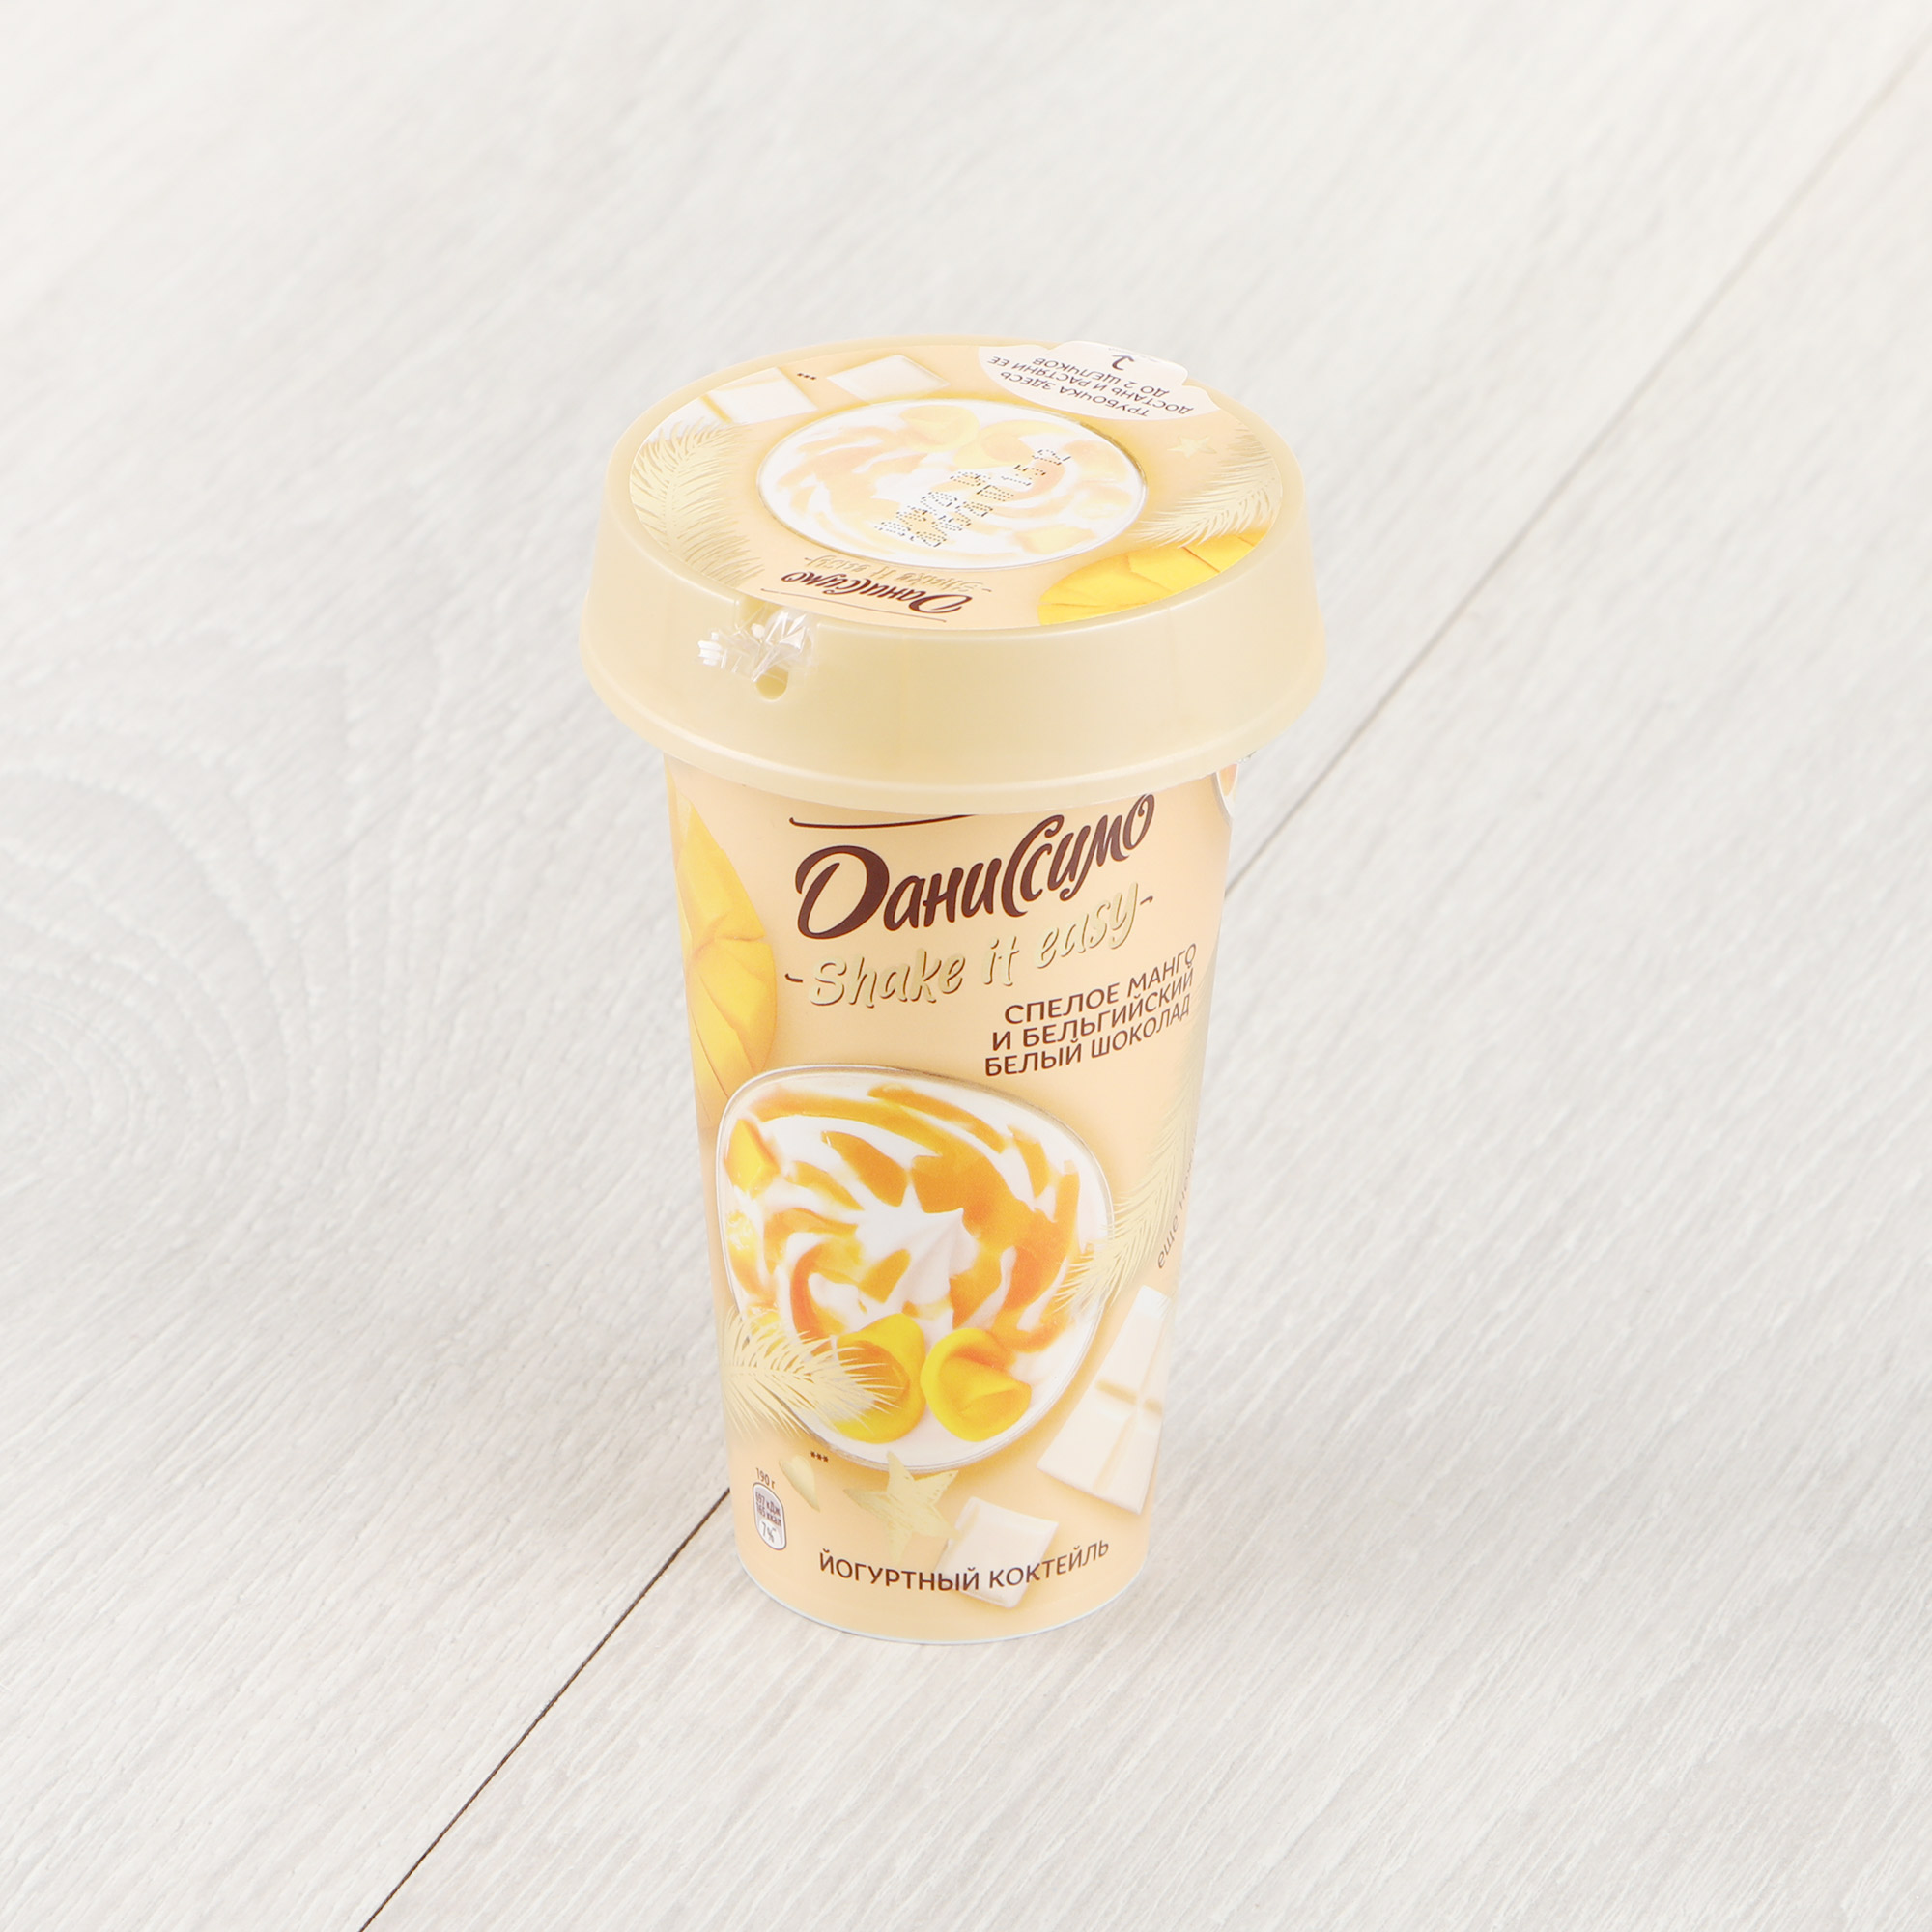 Коктейль йогуртный Даниссимо Shake&Go Спелое манго и бельгийский белый шоколад 2,7% 190 г - фото 1